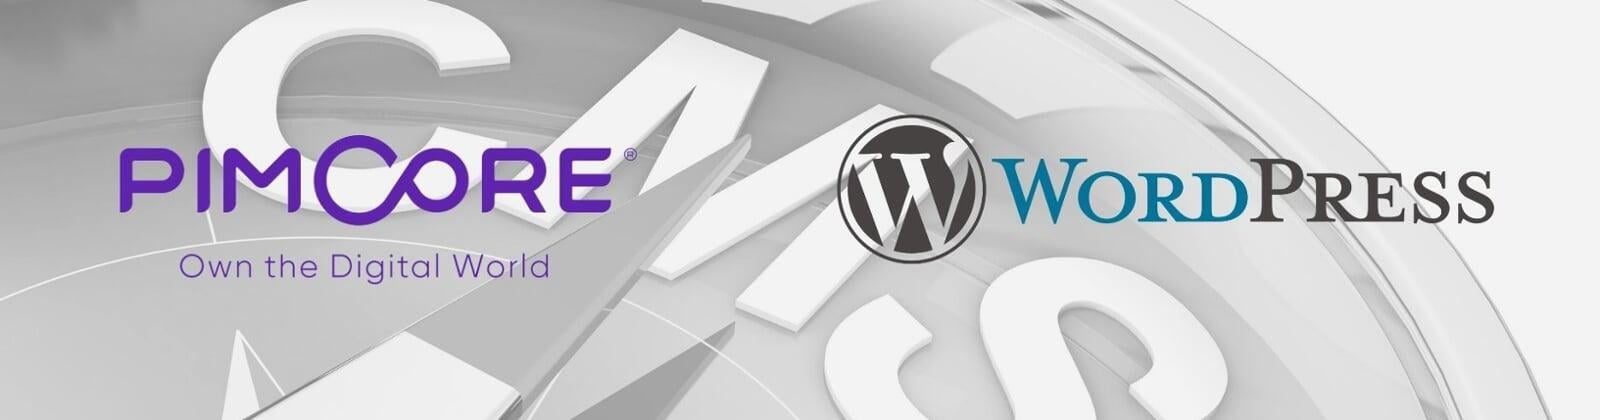 Pimcore und Wordpress im Vergleich